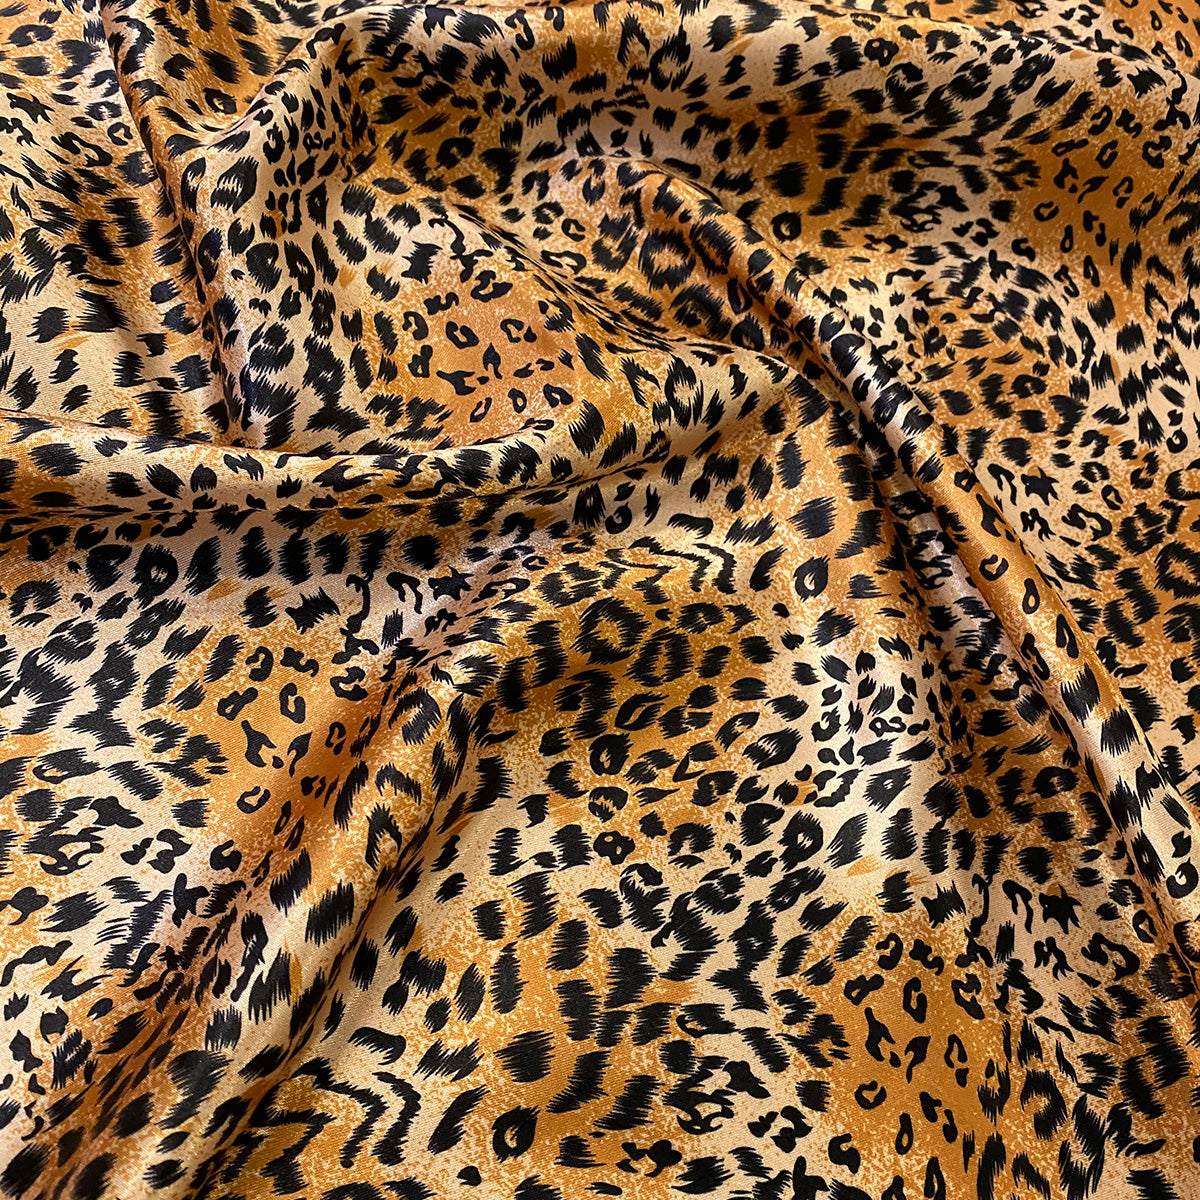 heltinde sikkerhed Disciplinære Animal Print Wholesale Fabric in Tiger